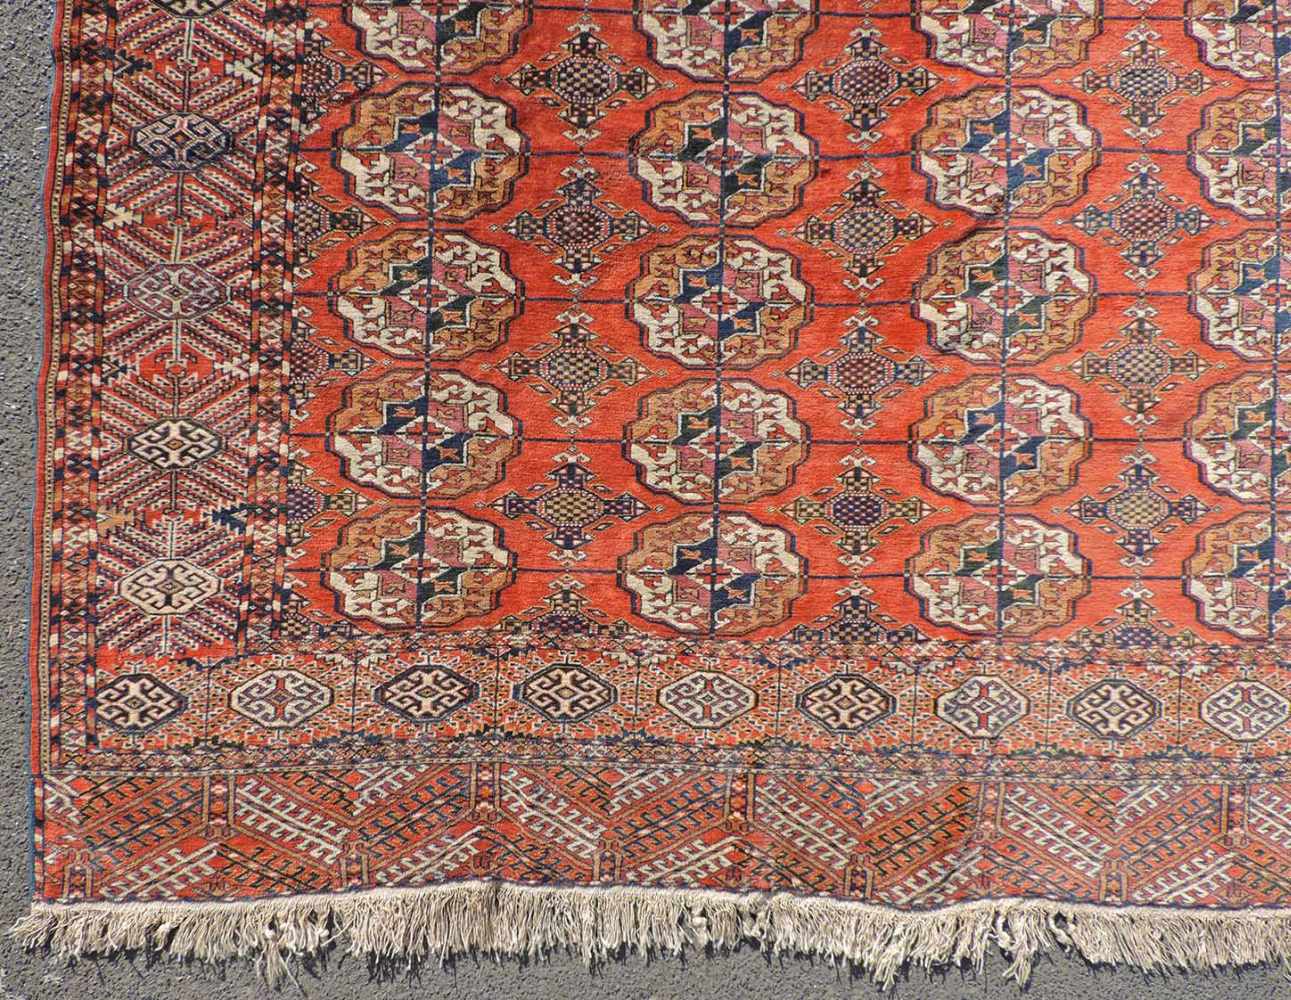 Jomud Stammesteppich. Iran. Antik, um 1910.309 cm x 210 cm. Handgeknüpft. Wolle auf Wolle. Göklan - Image 2 of 8